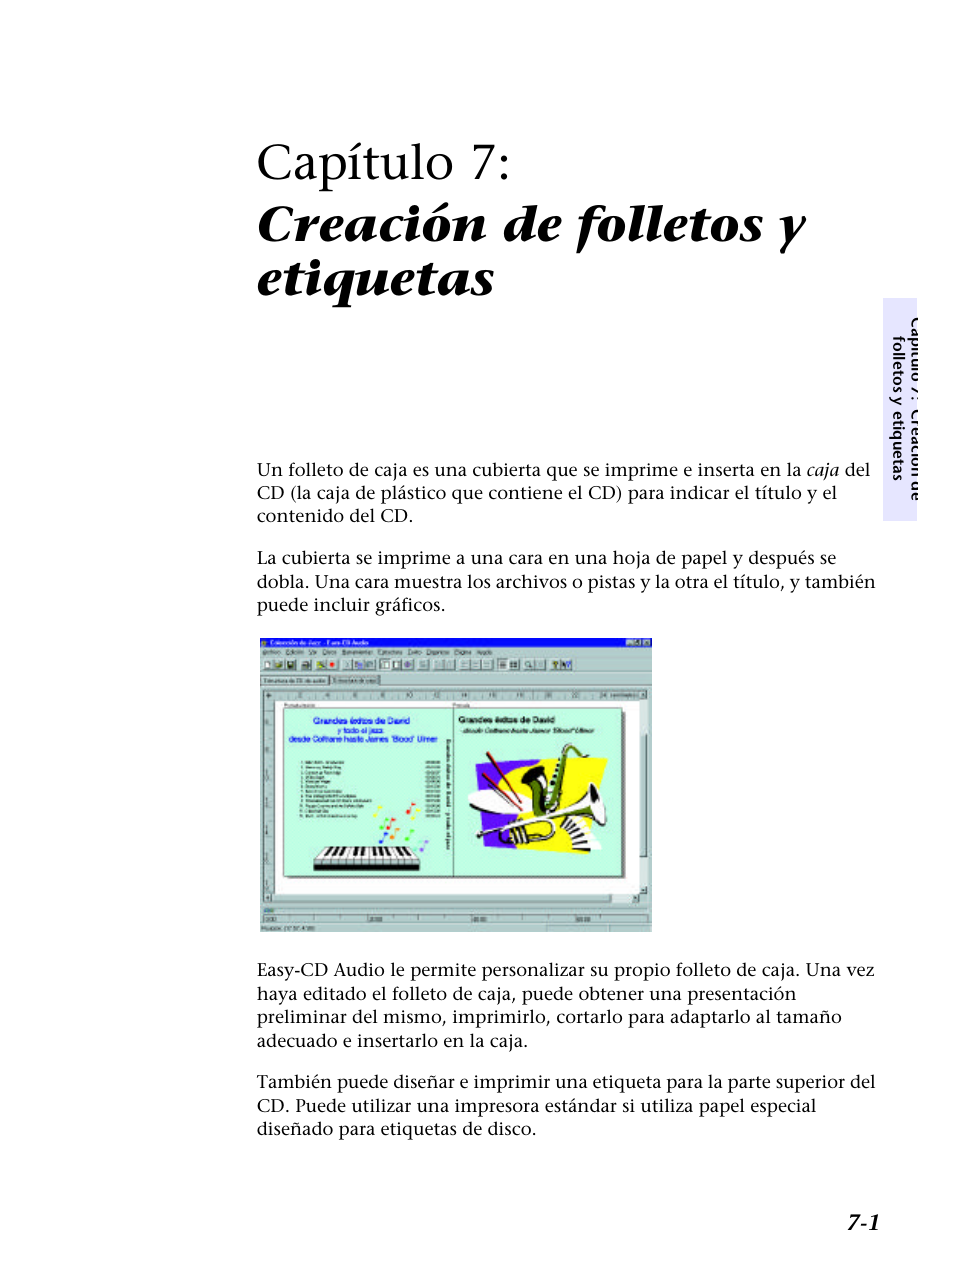 Capítulo 7: creación de folletos y, Capítulo 7: creación de folletos y etiquetas | HP Unidad Interna HP CD-Writer Plus 7200i Manual del usuario | Página 63 / 218